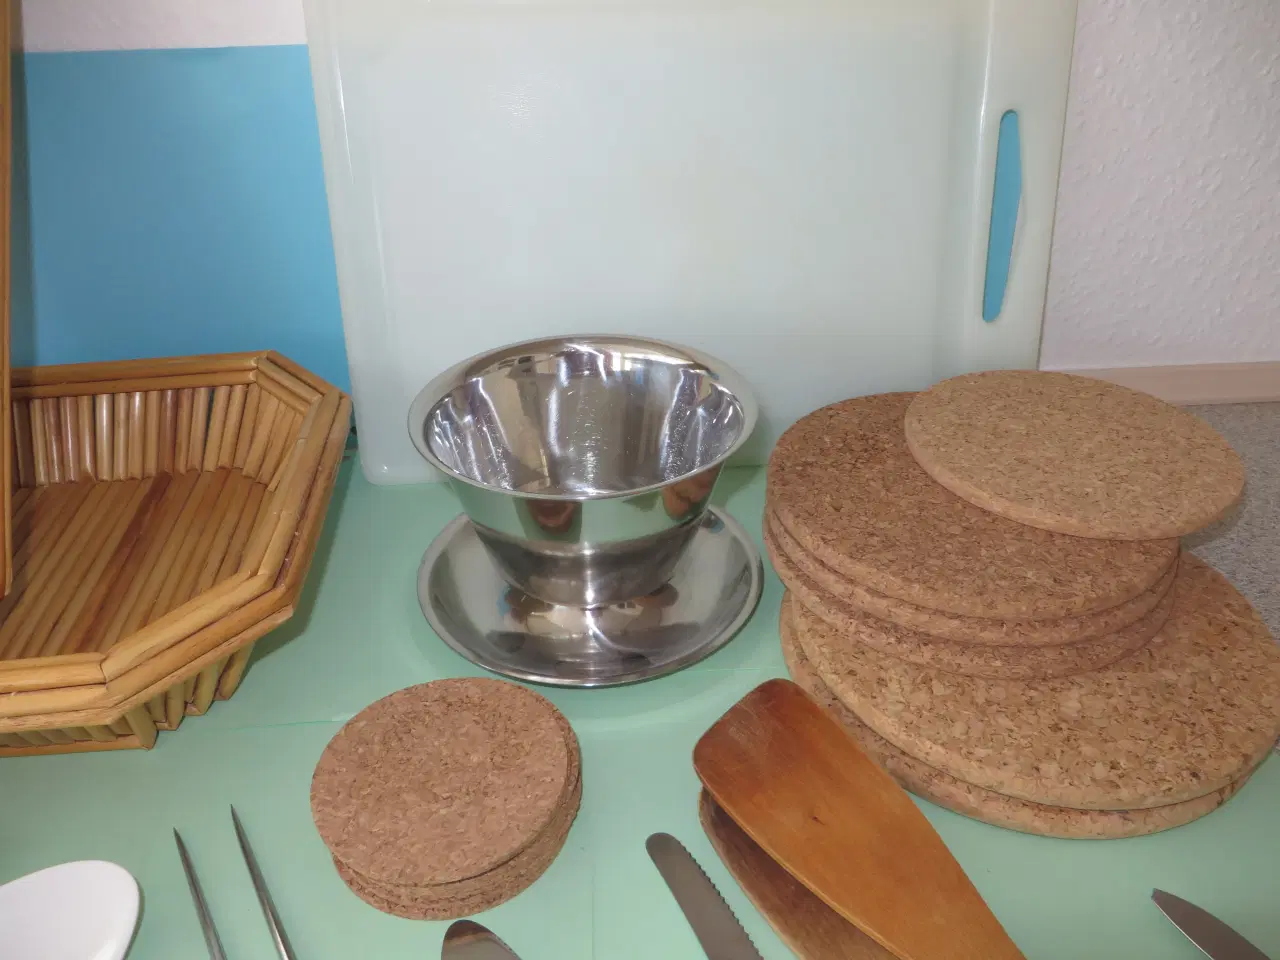 Billede 4 - Brødkurve, skærebræt, køkkenredskaber, bordskåner 